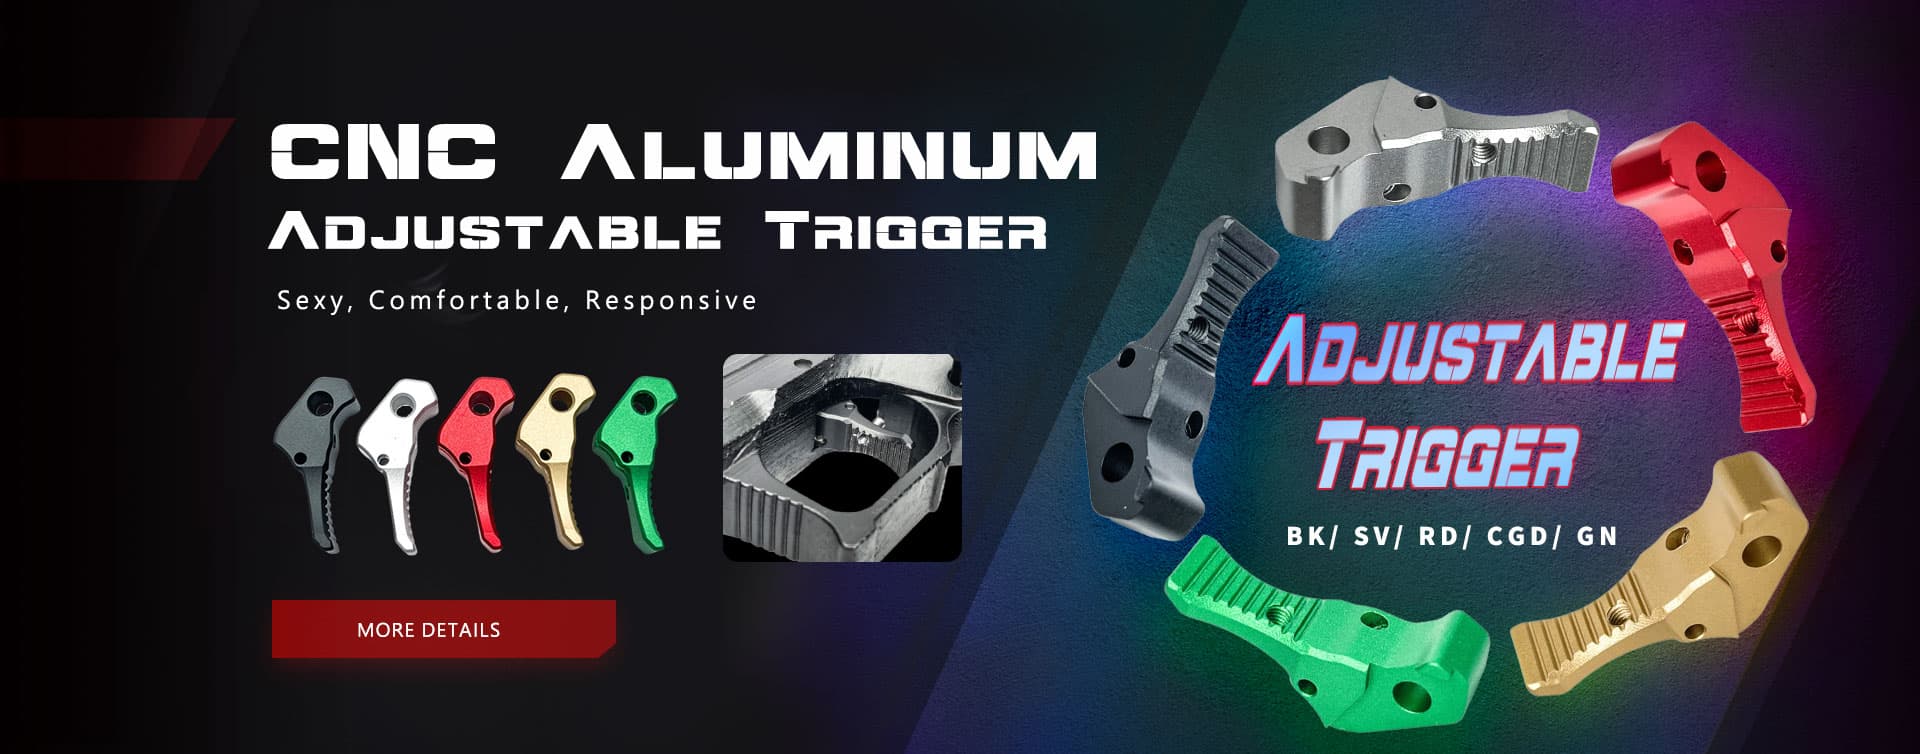 CNC Aluminum Adjustable Trigger